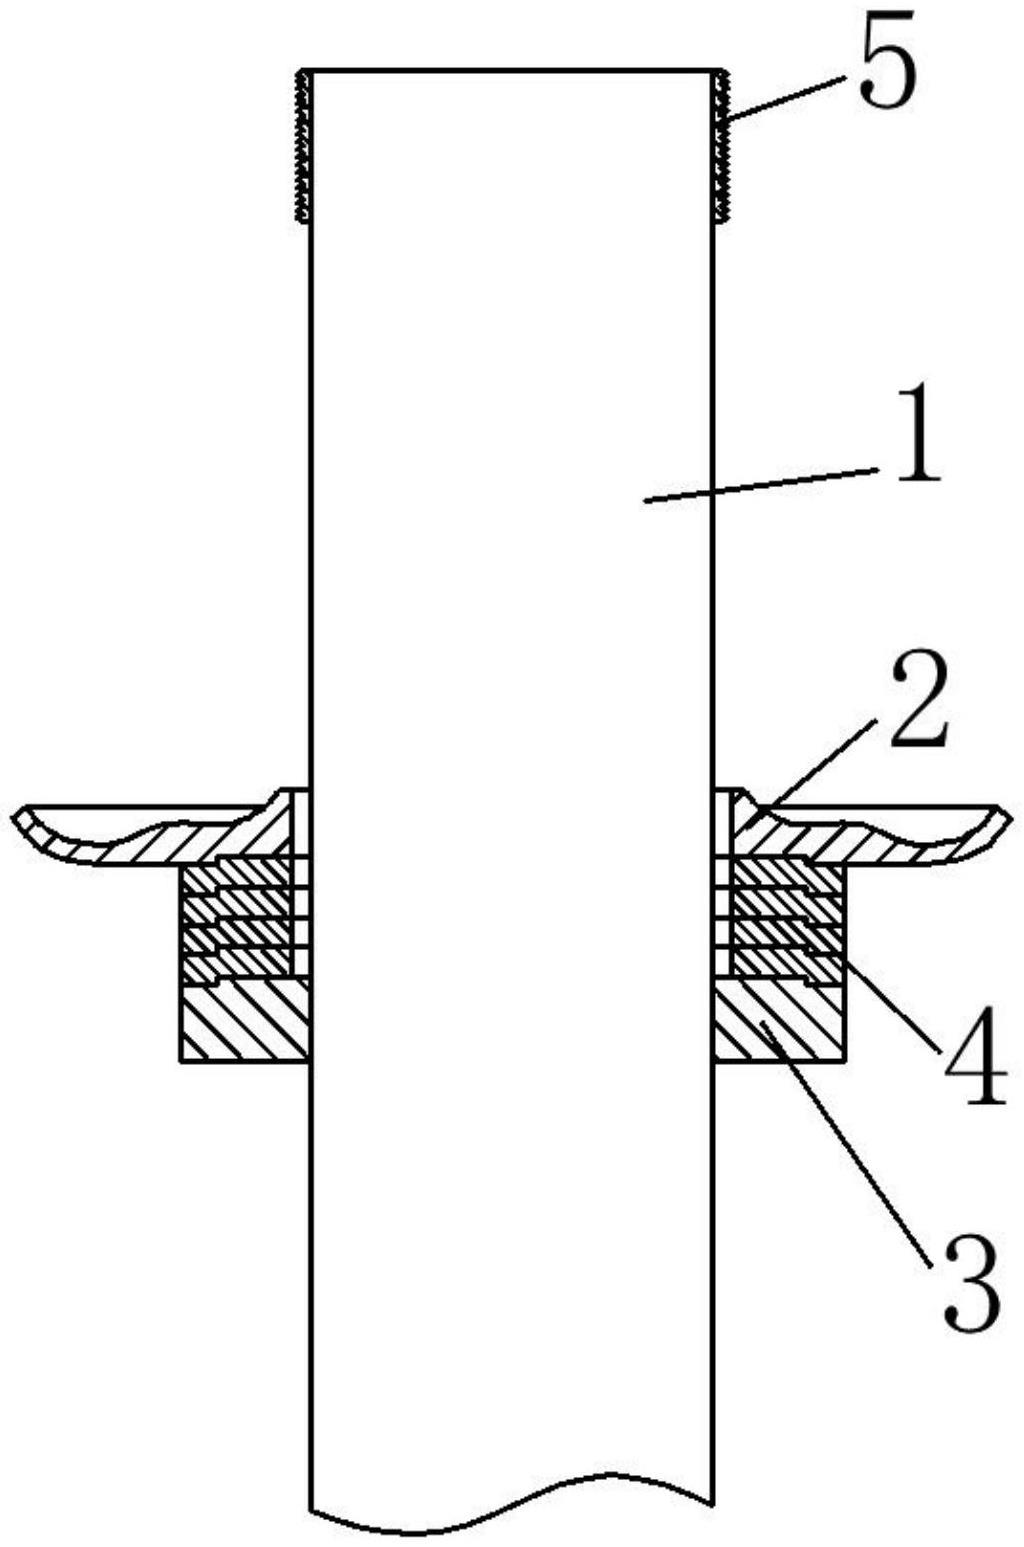 减震器弹簧盘高度调节构造的制作方法